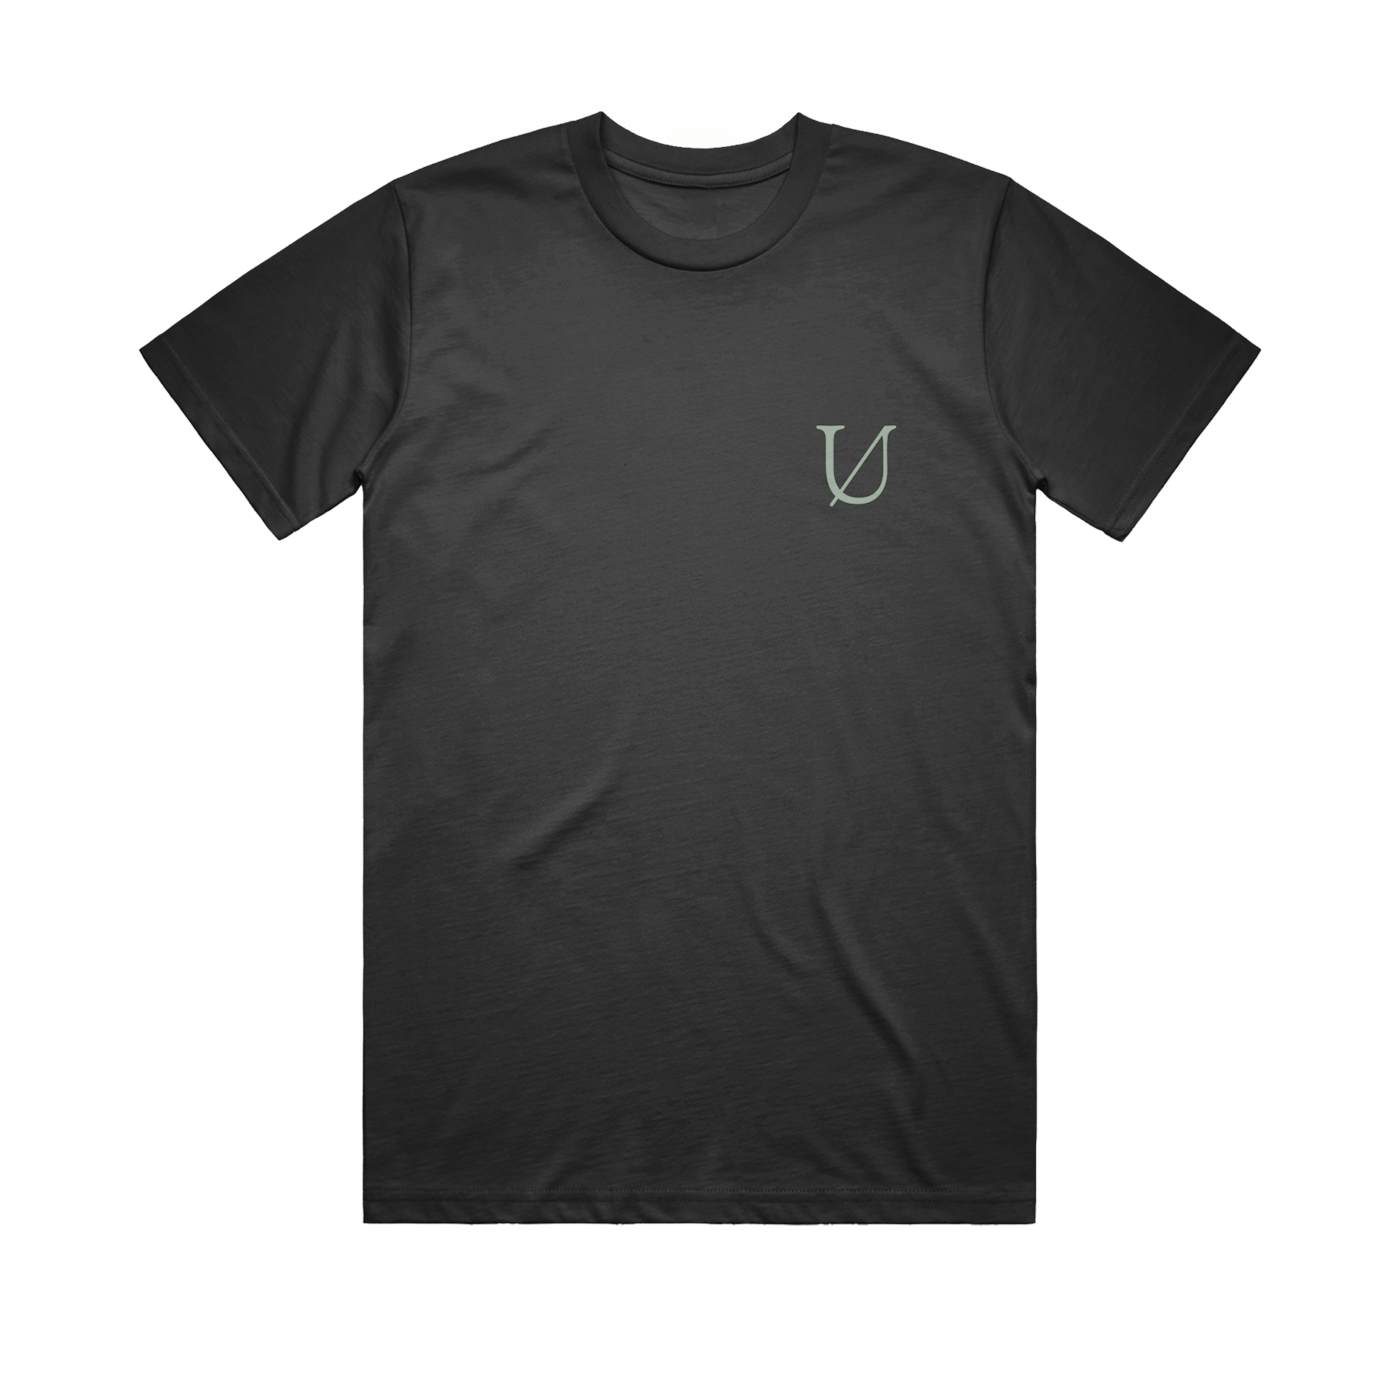 Underoath "Voyeurist Face" T-Shirt